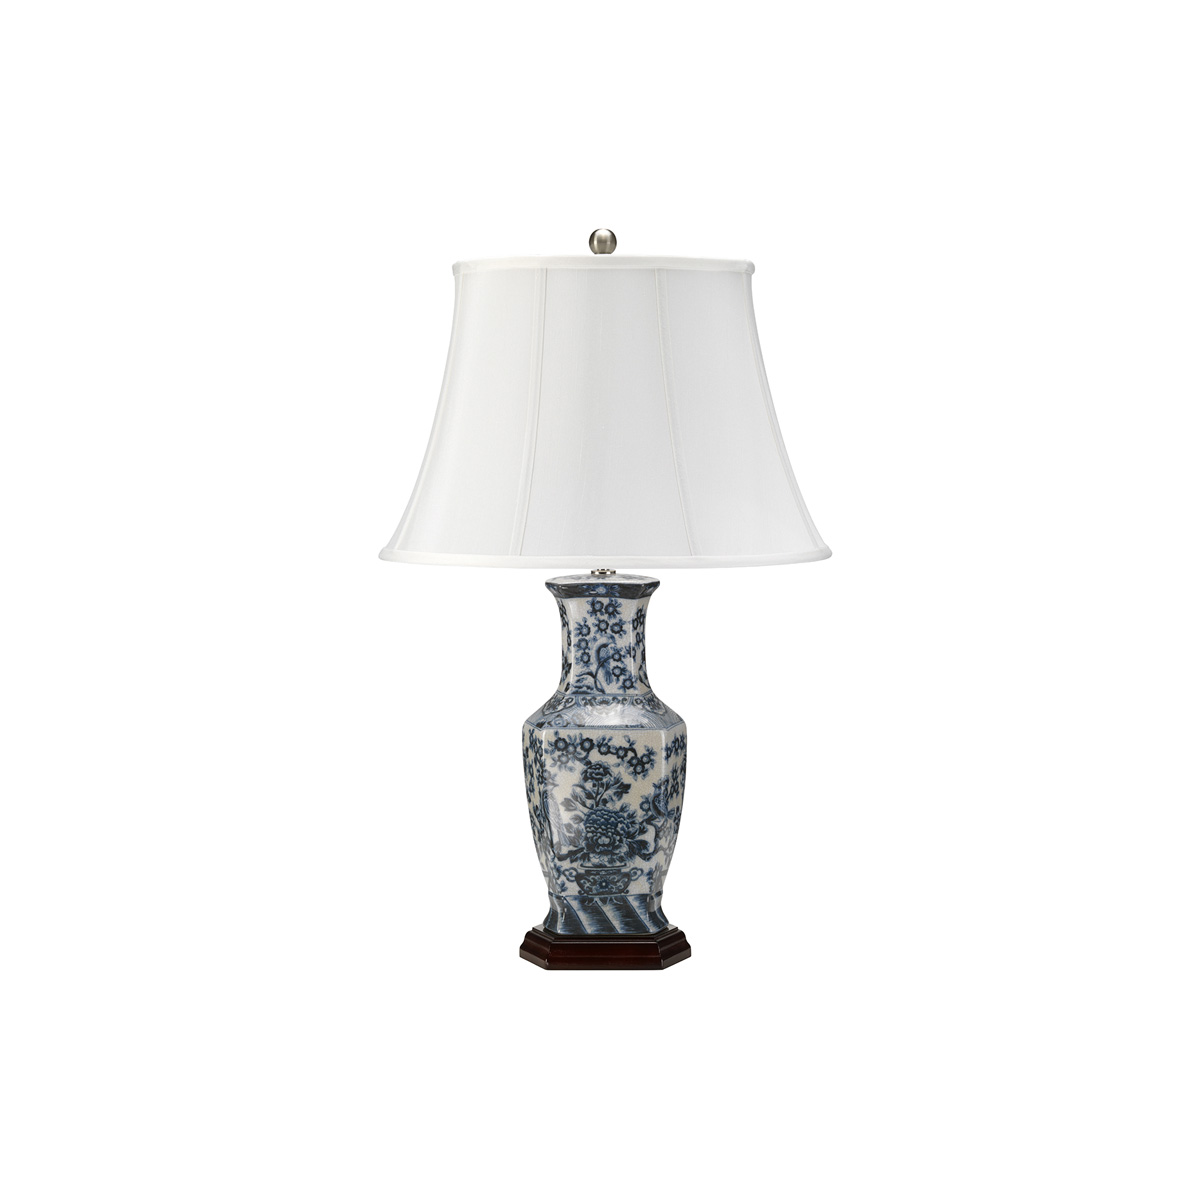 Настольная лампа BLUE-HEX-TL, Настольные лампы Классический | Керамика | Синий/Белый Белый/Бежевый | Прихожая, спальня, гостиная, столовая.